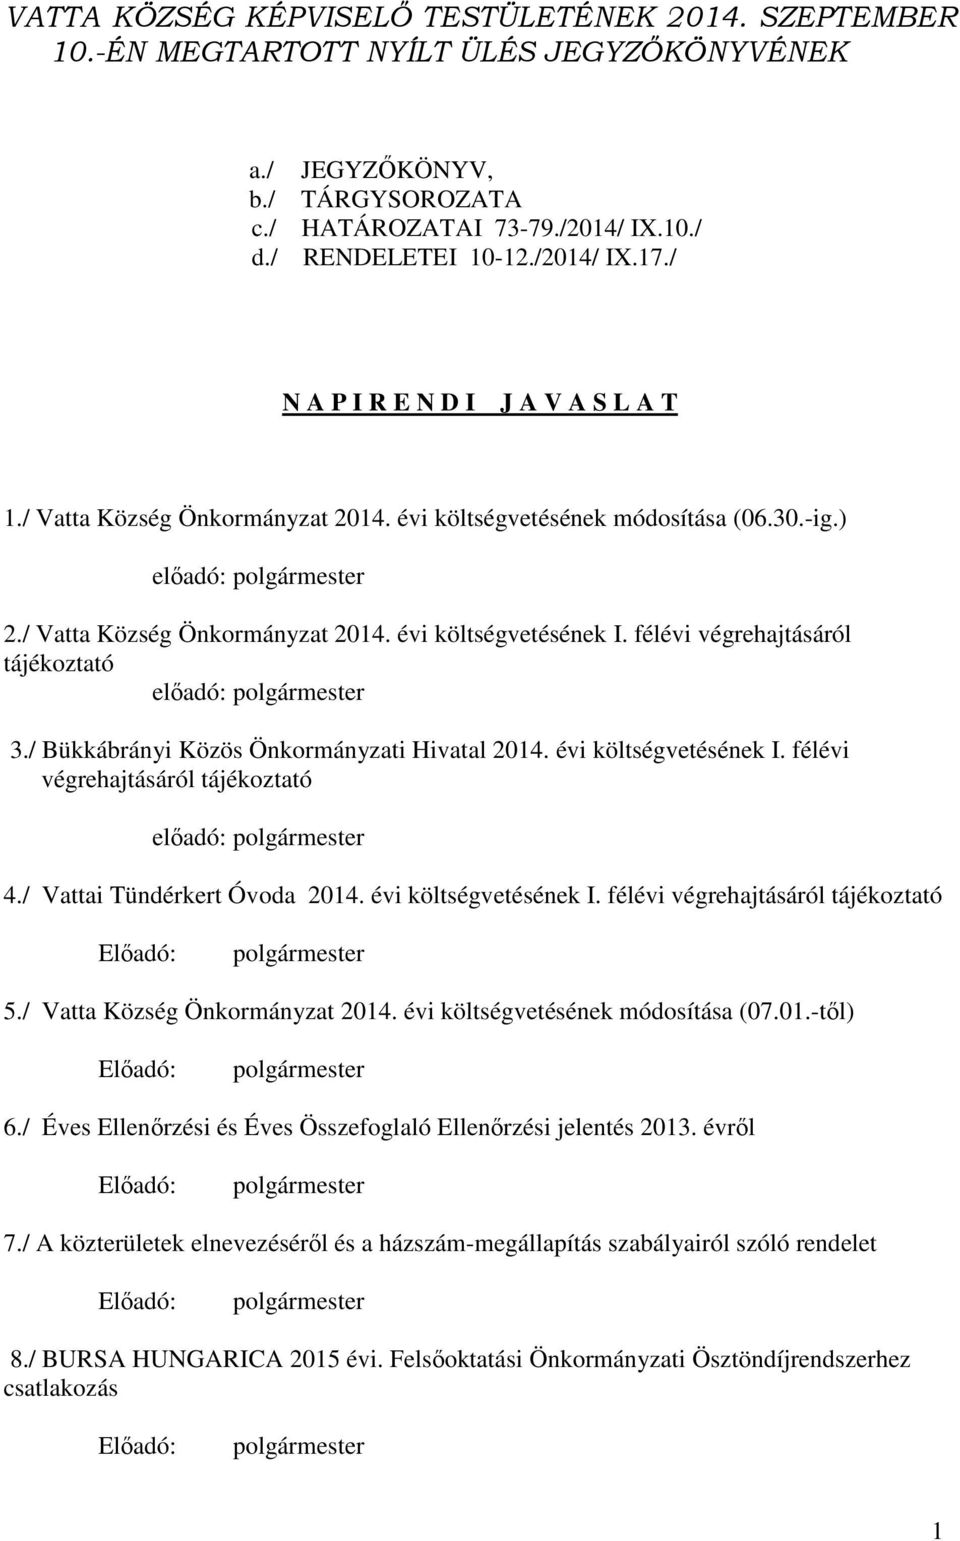 félévi végrehajtásáról tájékoztató előadó: 3./ Bükkábrányi Közös Önkormányzati Hivatal 2014. évi költségvetésének I. félévi végrehajtásáról tájékoztató előadó: 4./ Vattai Tündérkert Óvoda 2014.